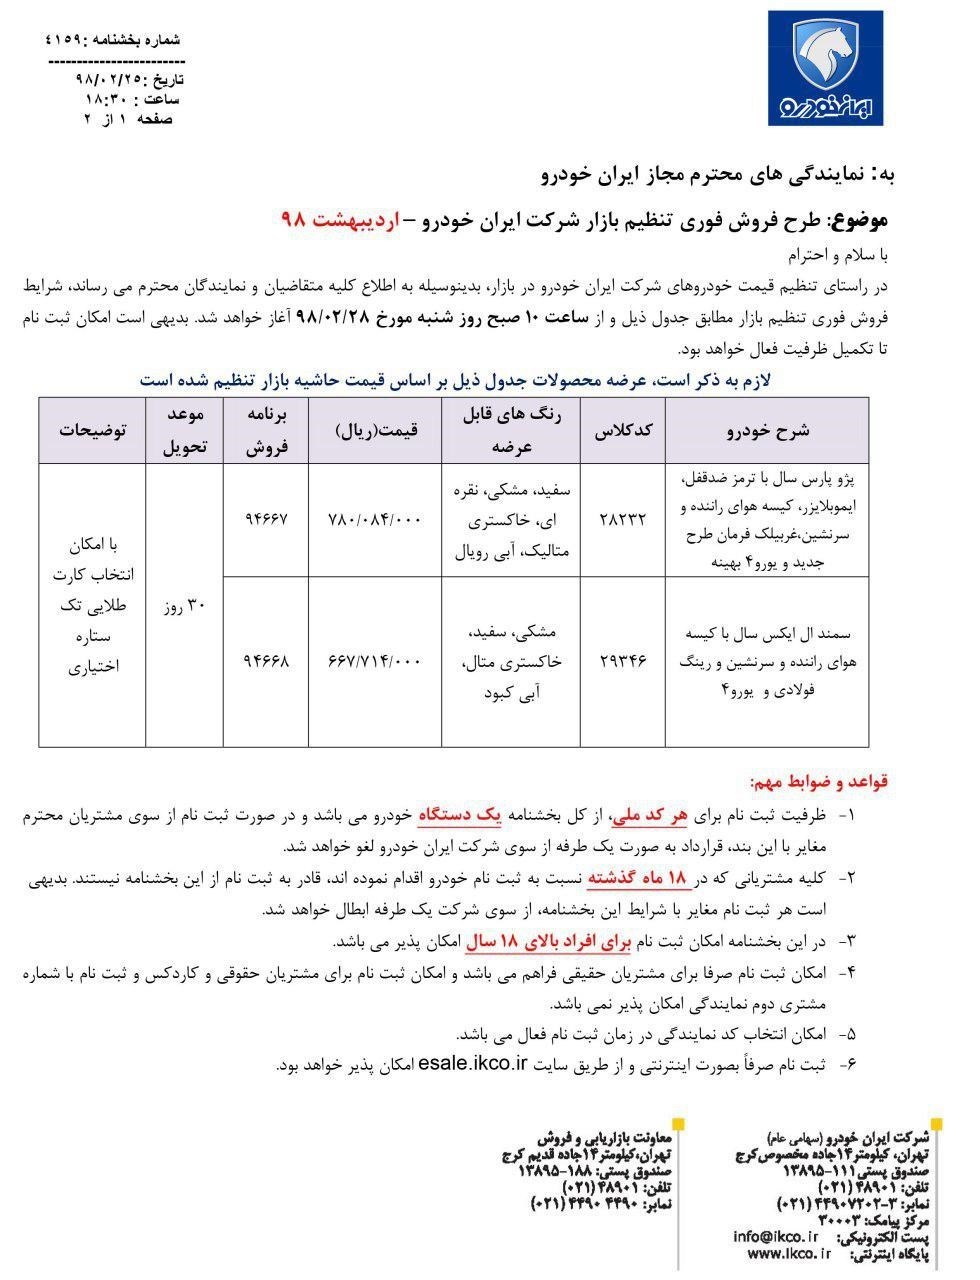 شرایط فروش ایران خودرو 28 اردیبهشت 98